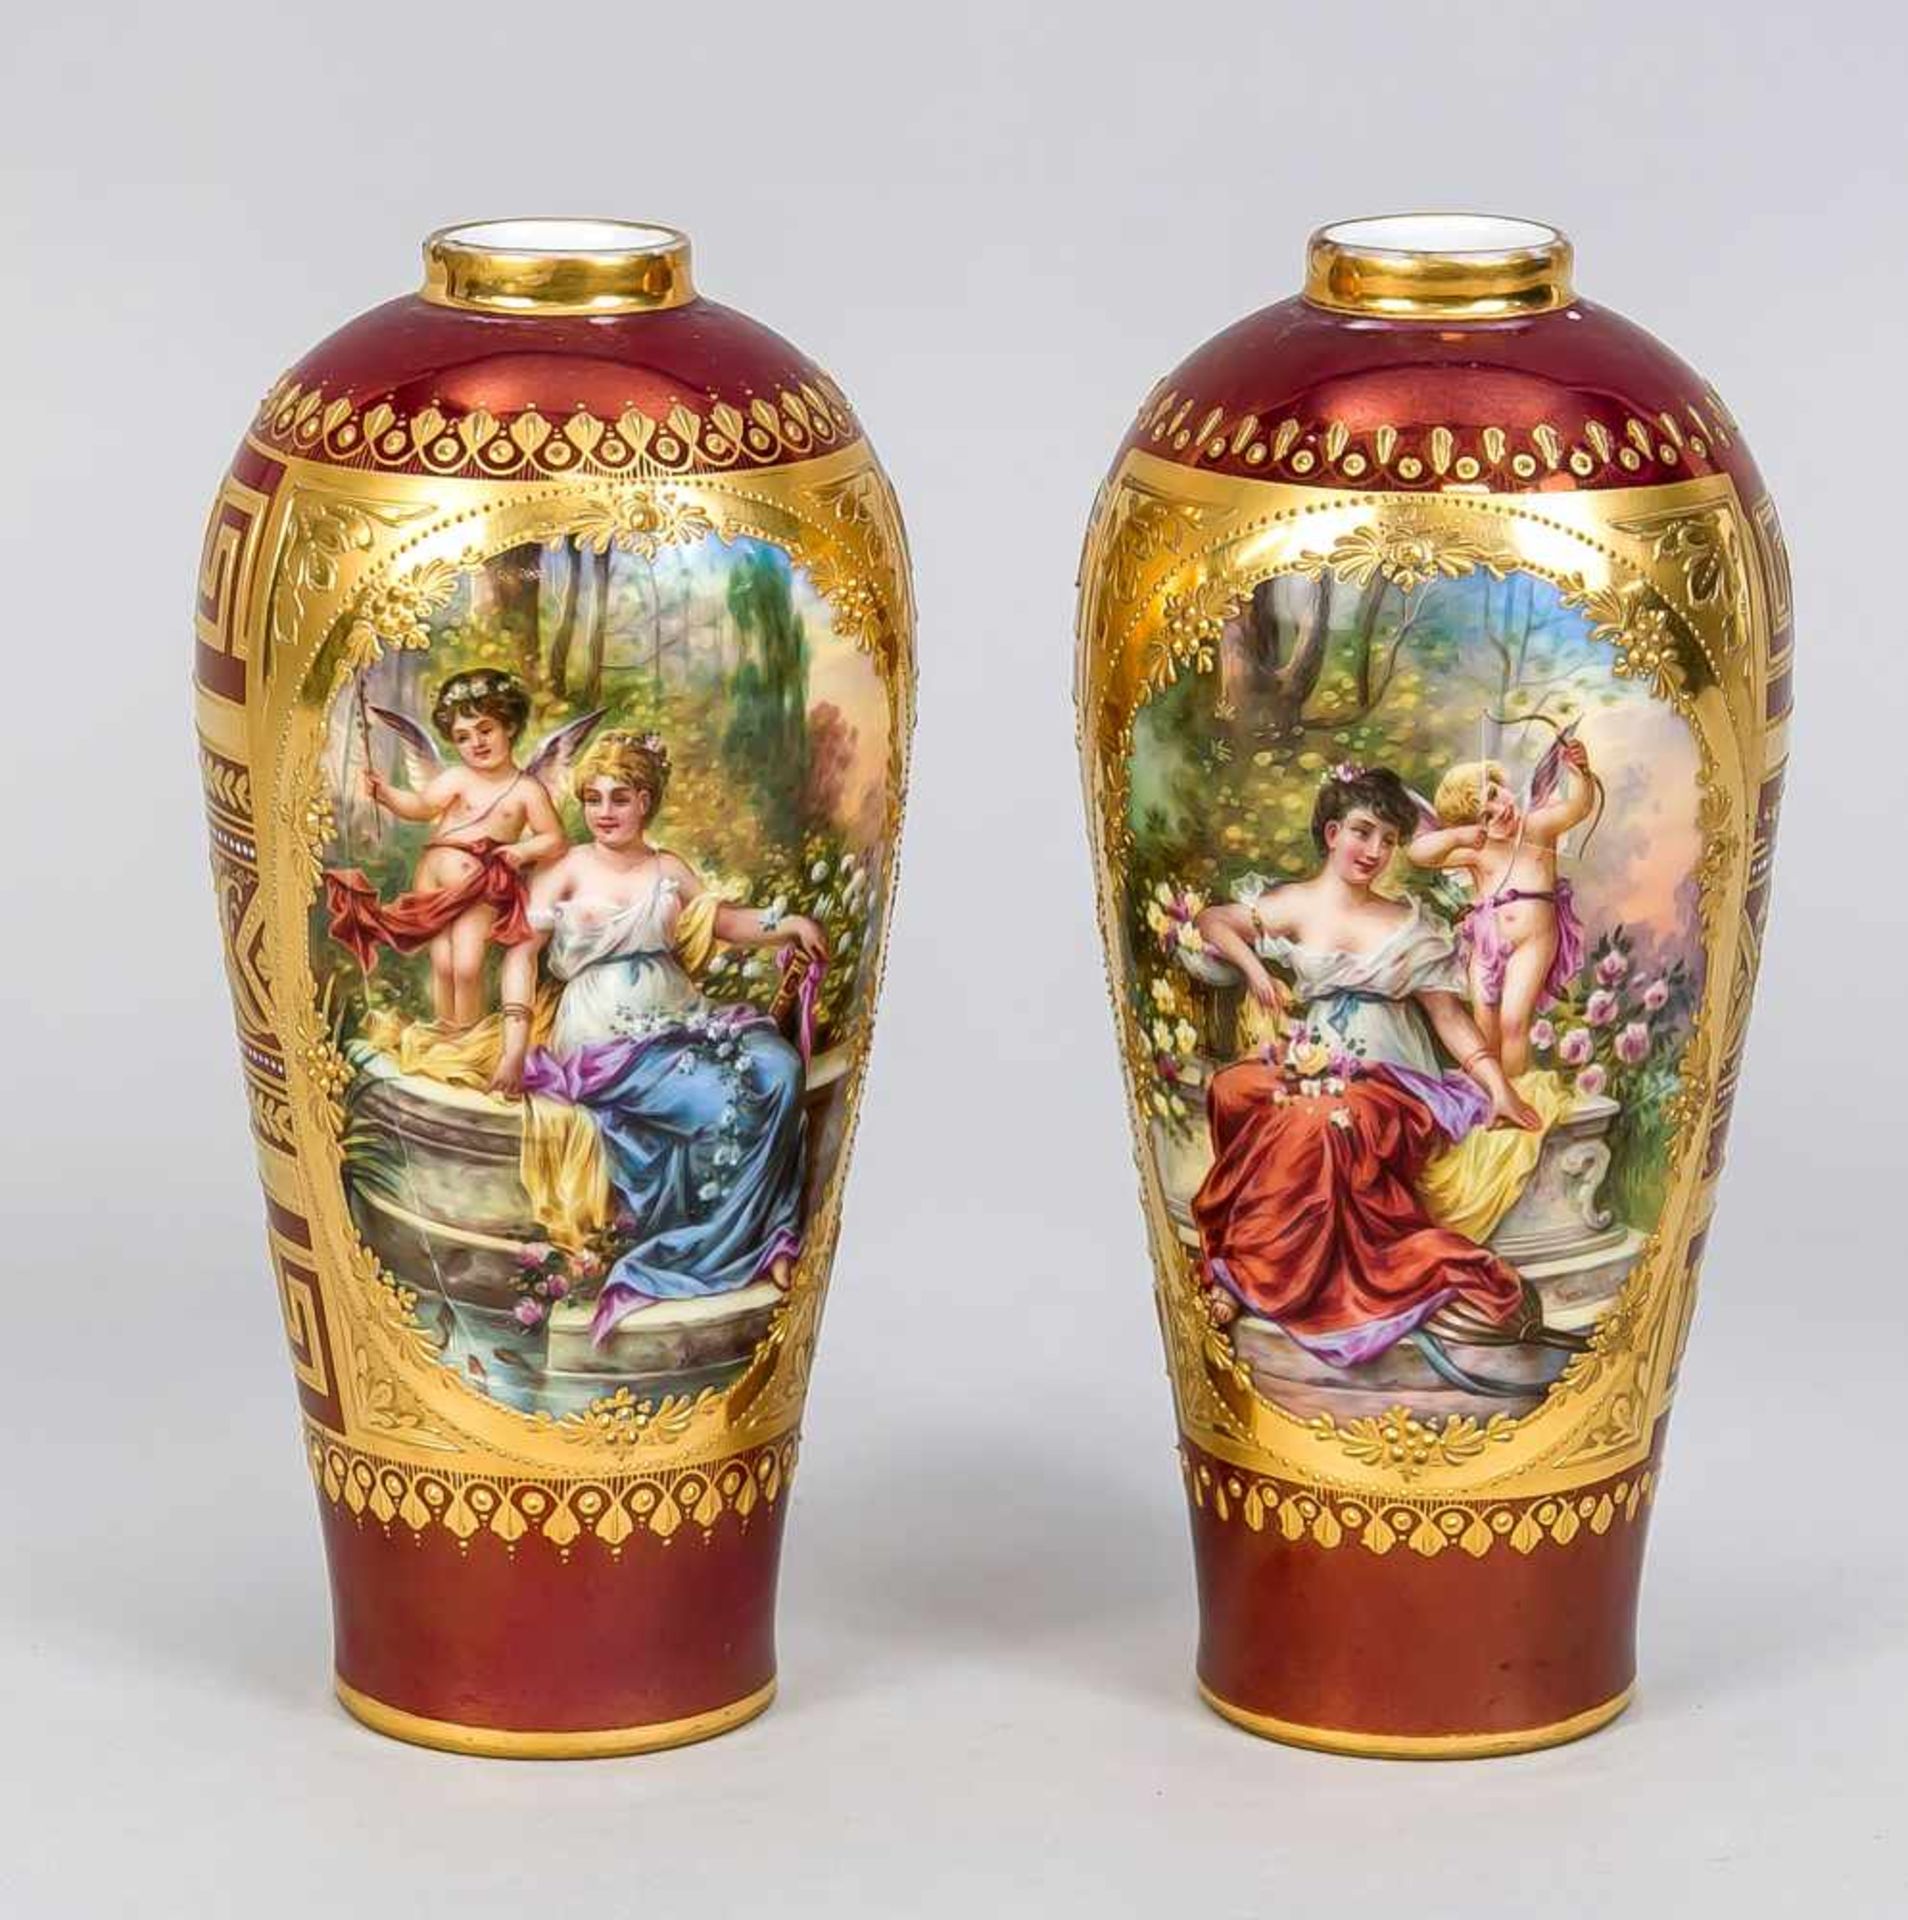 Paar Vasen, Thüringen, Ende 19. Jh., in Wiener Manier, frontseitig Medaillon mit